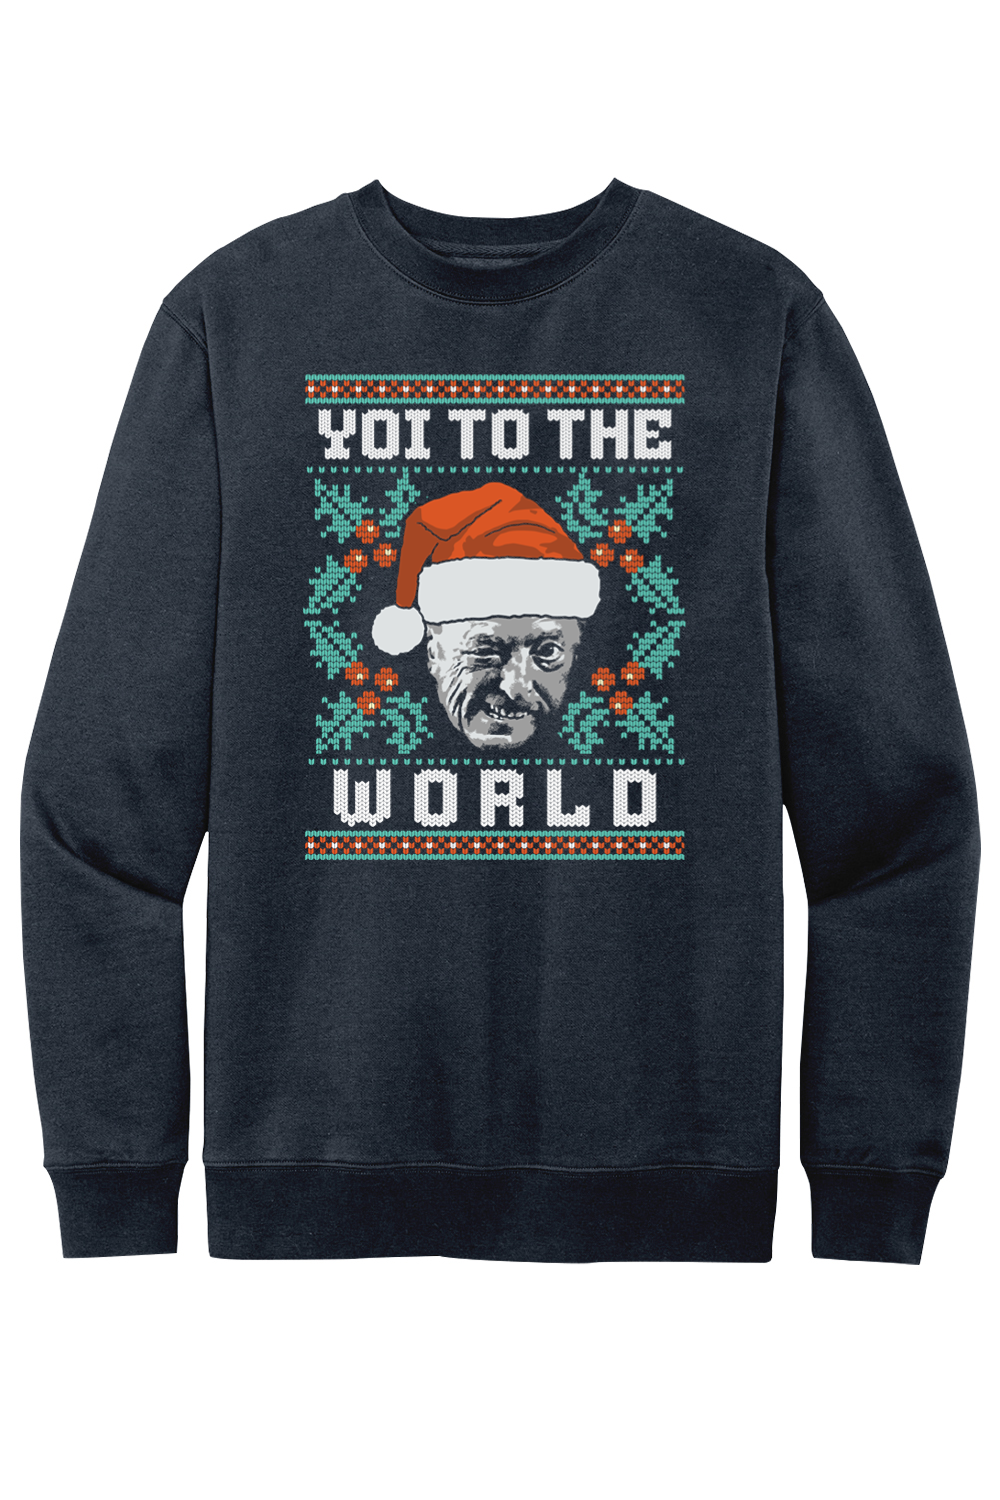 Yoi to the World - Ugly Christmas Sweater - Fleece Crewneck Sweatshirt - Yinzylvania